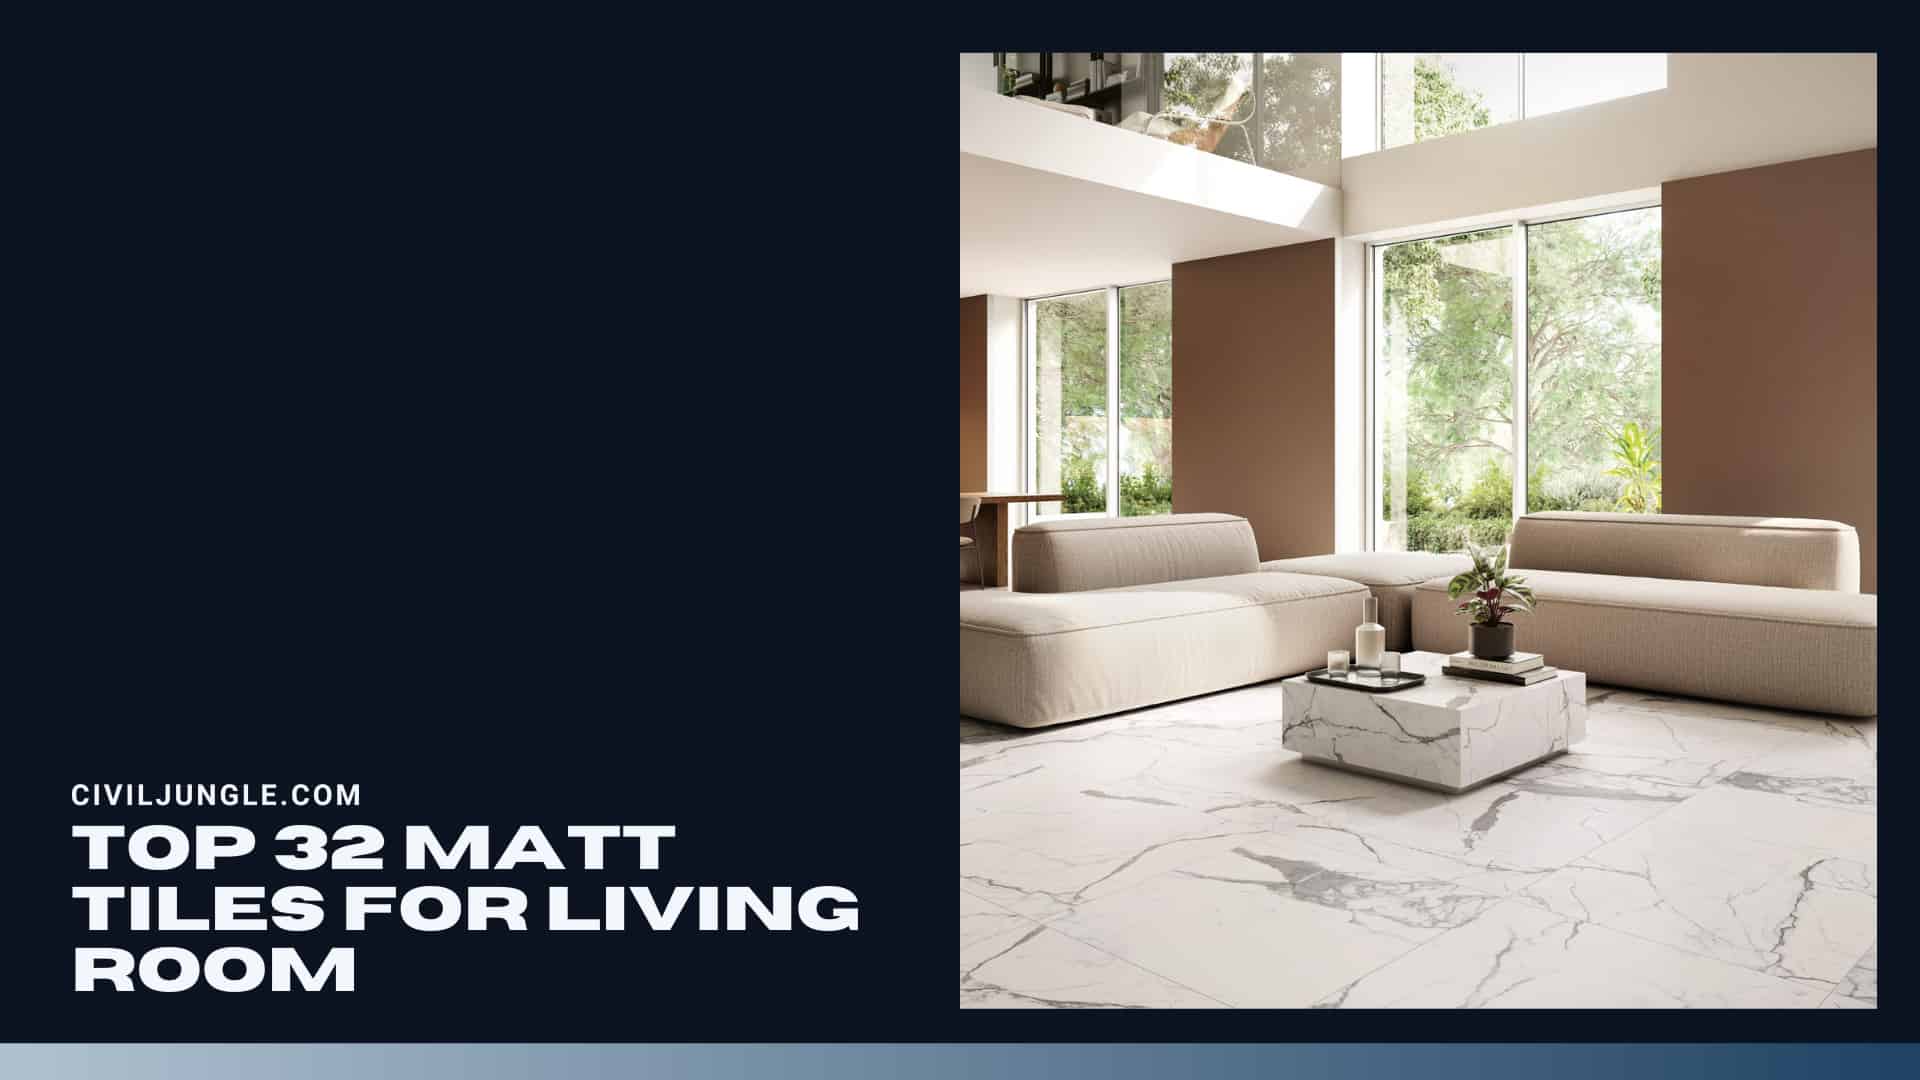 Top 32 Matt Tiles for Living Room